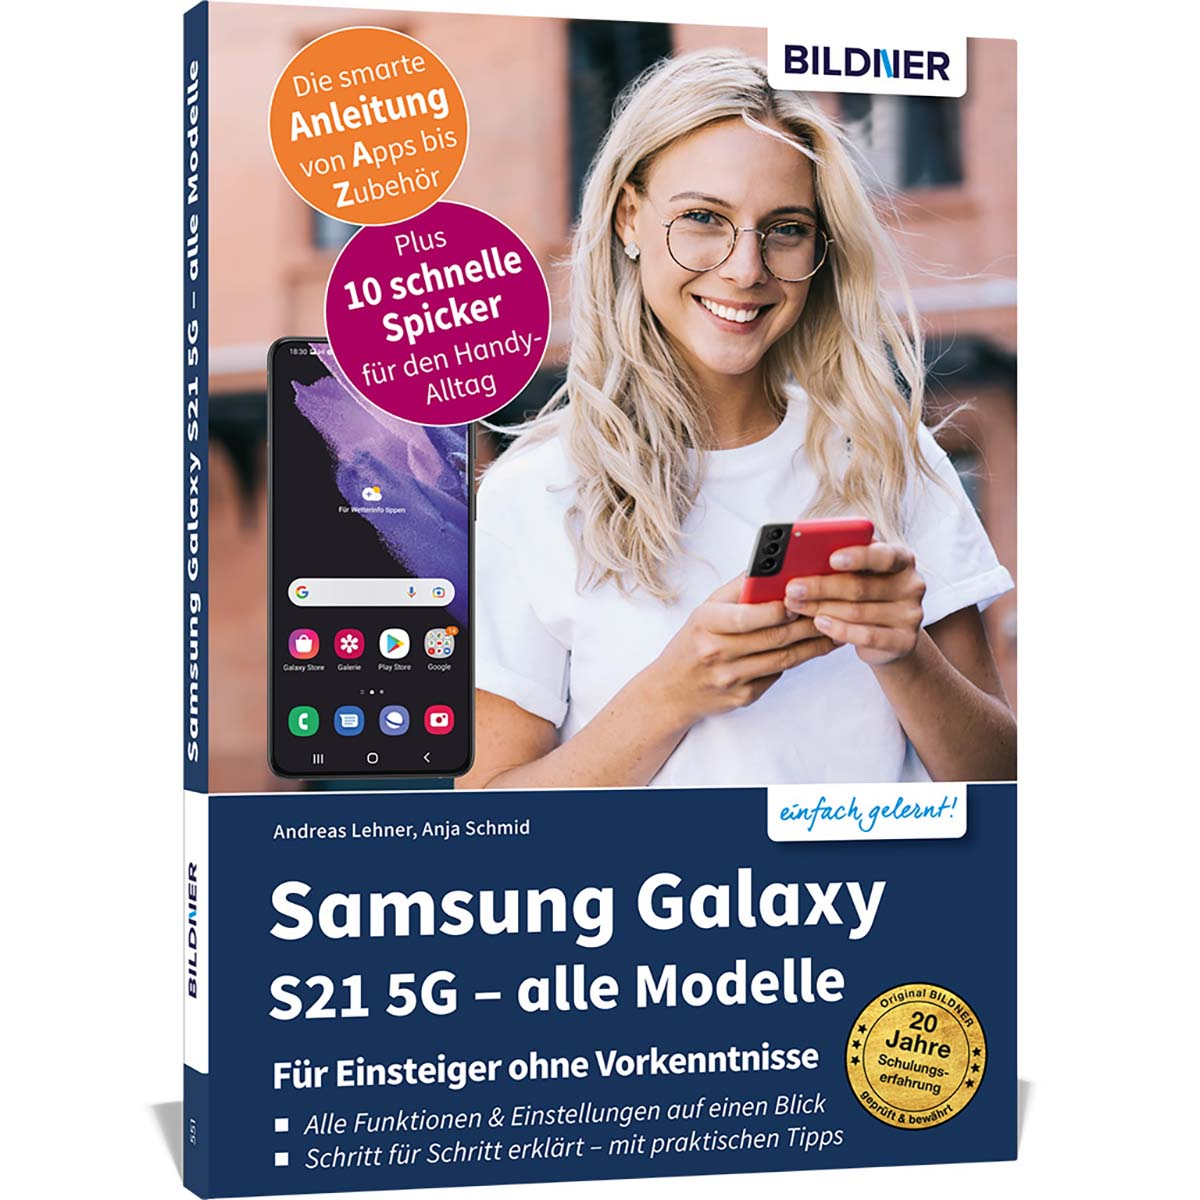 5G alle Modelle - S21 Galaxy Samsung